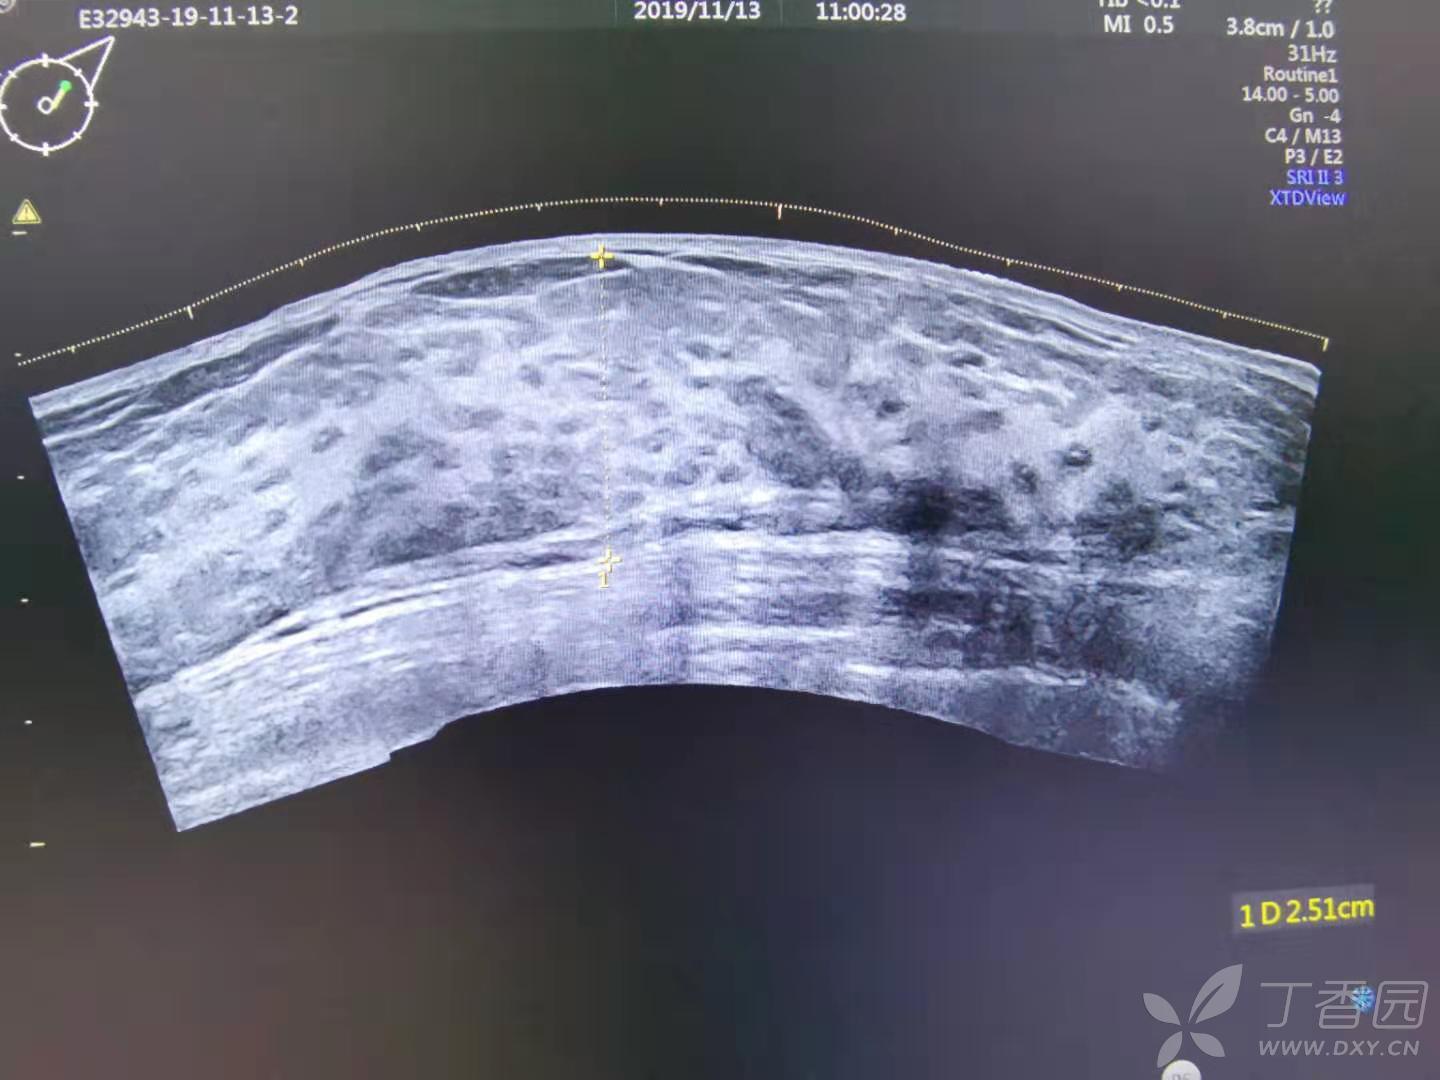 副乳超声诊断图片